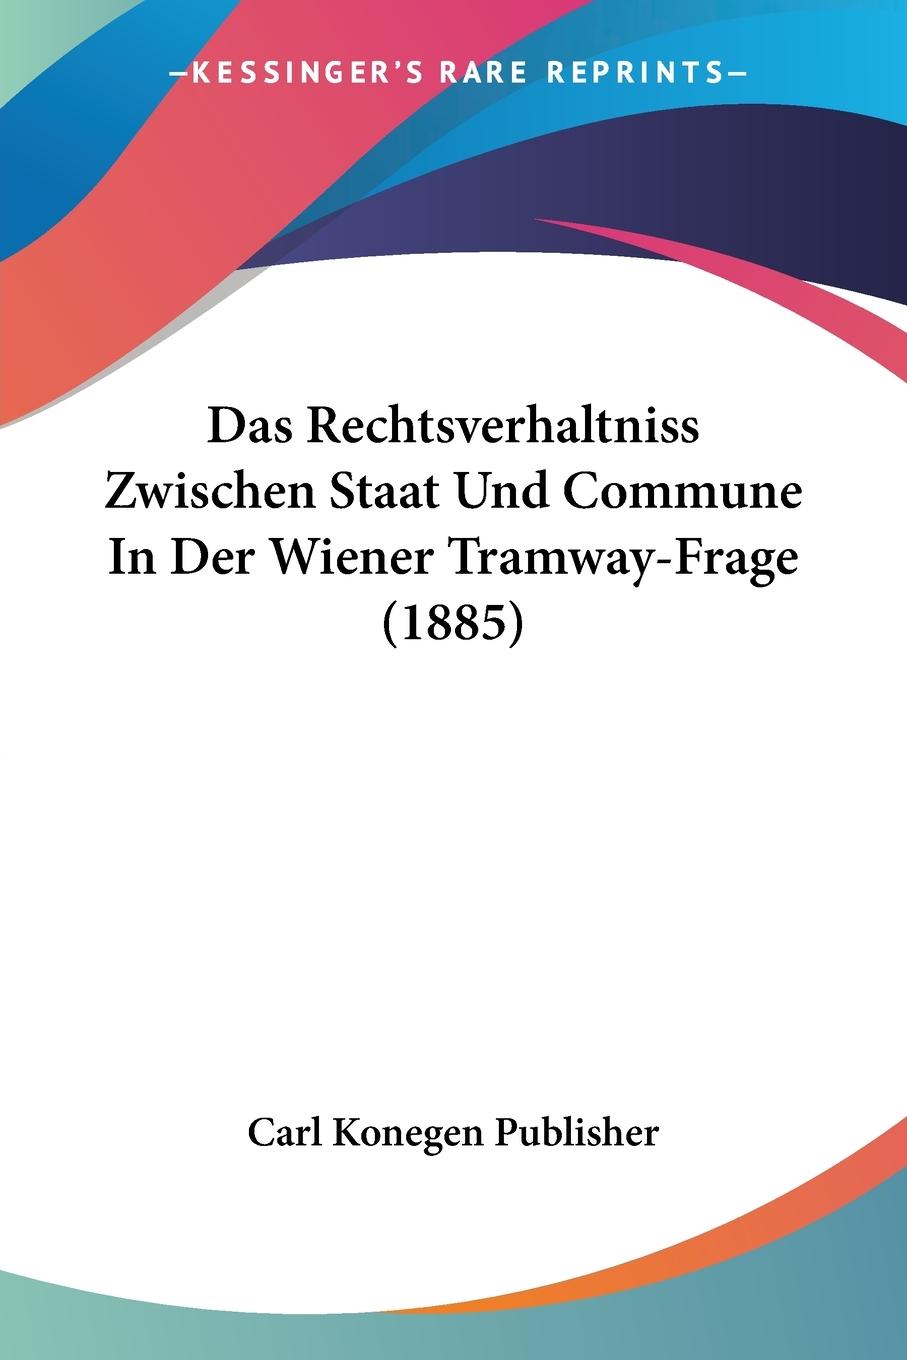 Das Rechtsverhaltniss Zwischen Staat Und Commune In Der Wiener Tramway-Frage (1885) - Carl Konegen Publisher